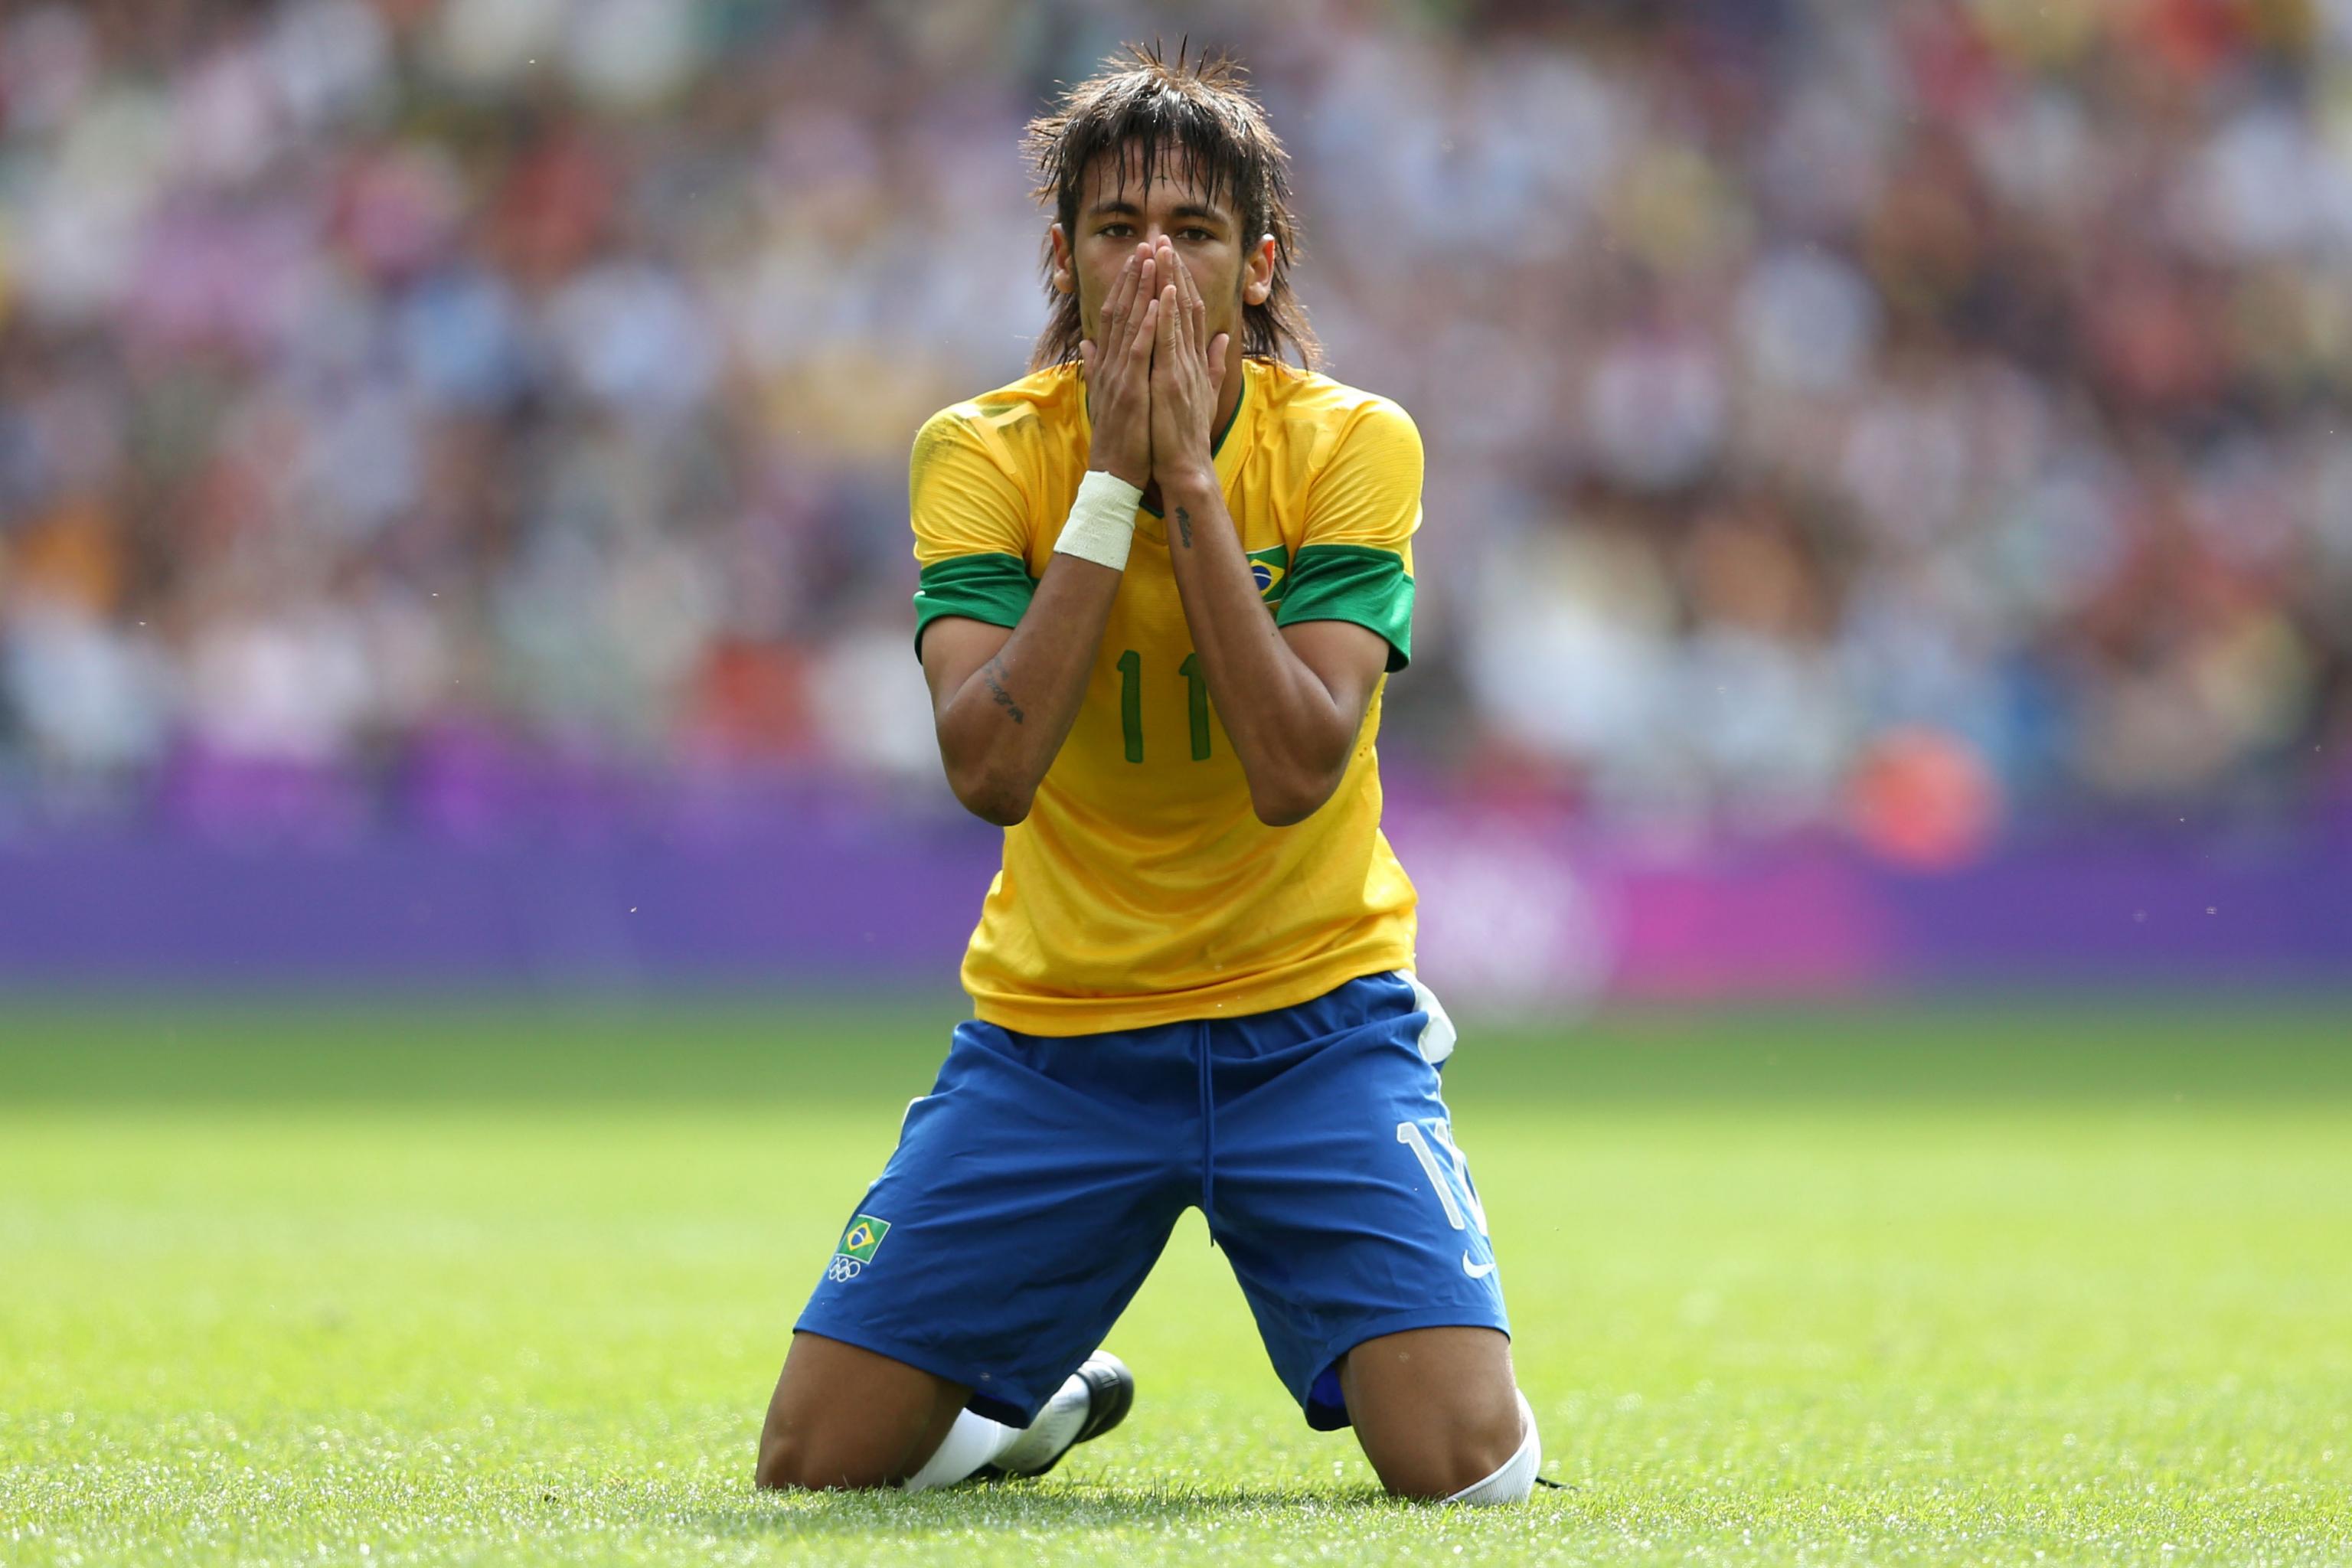 possibilty of neymar to wear jersey - Football fight club